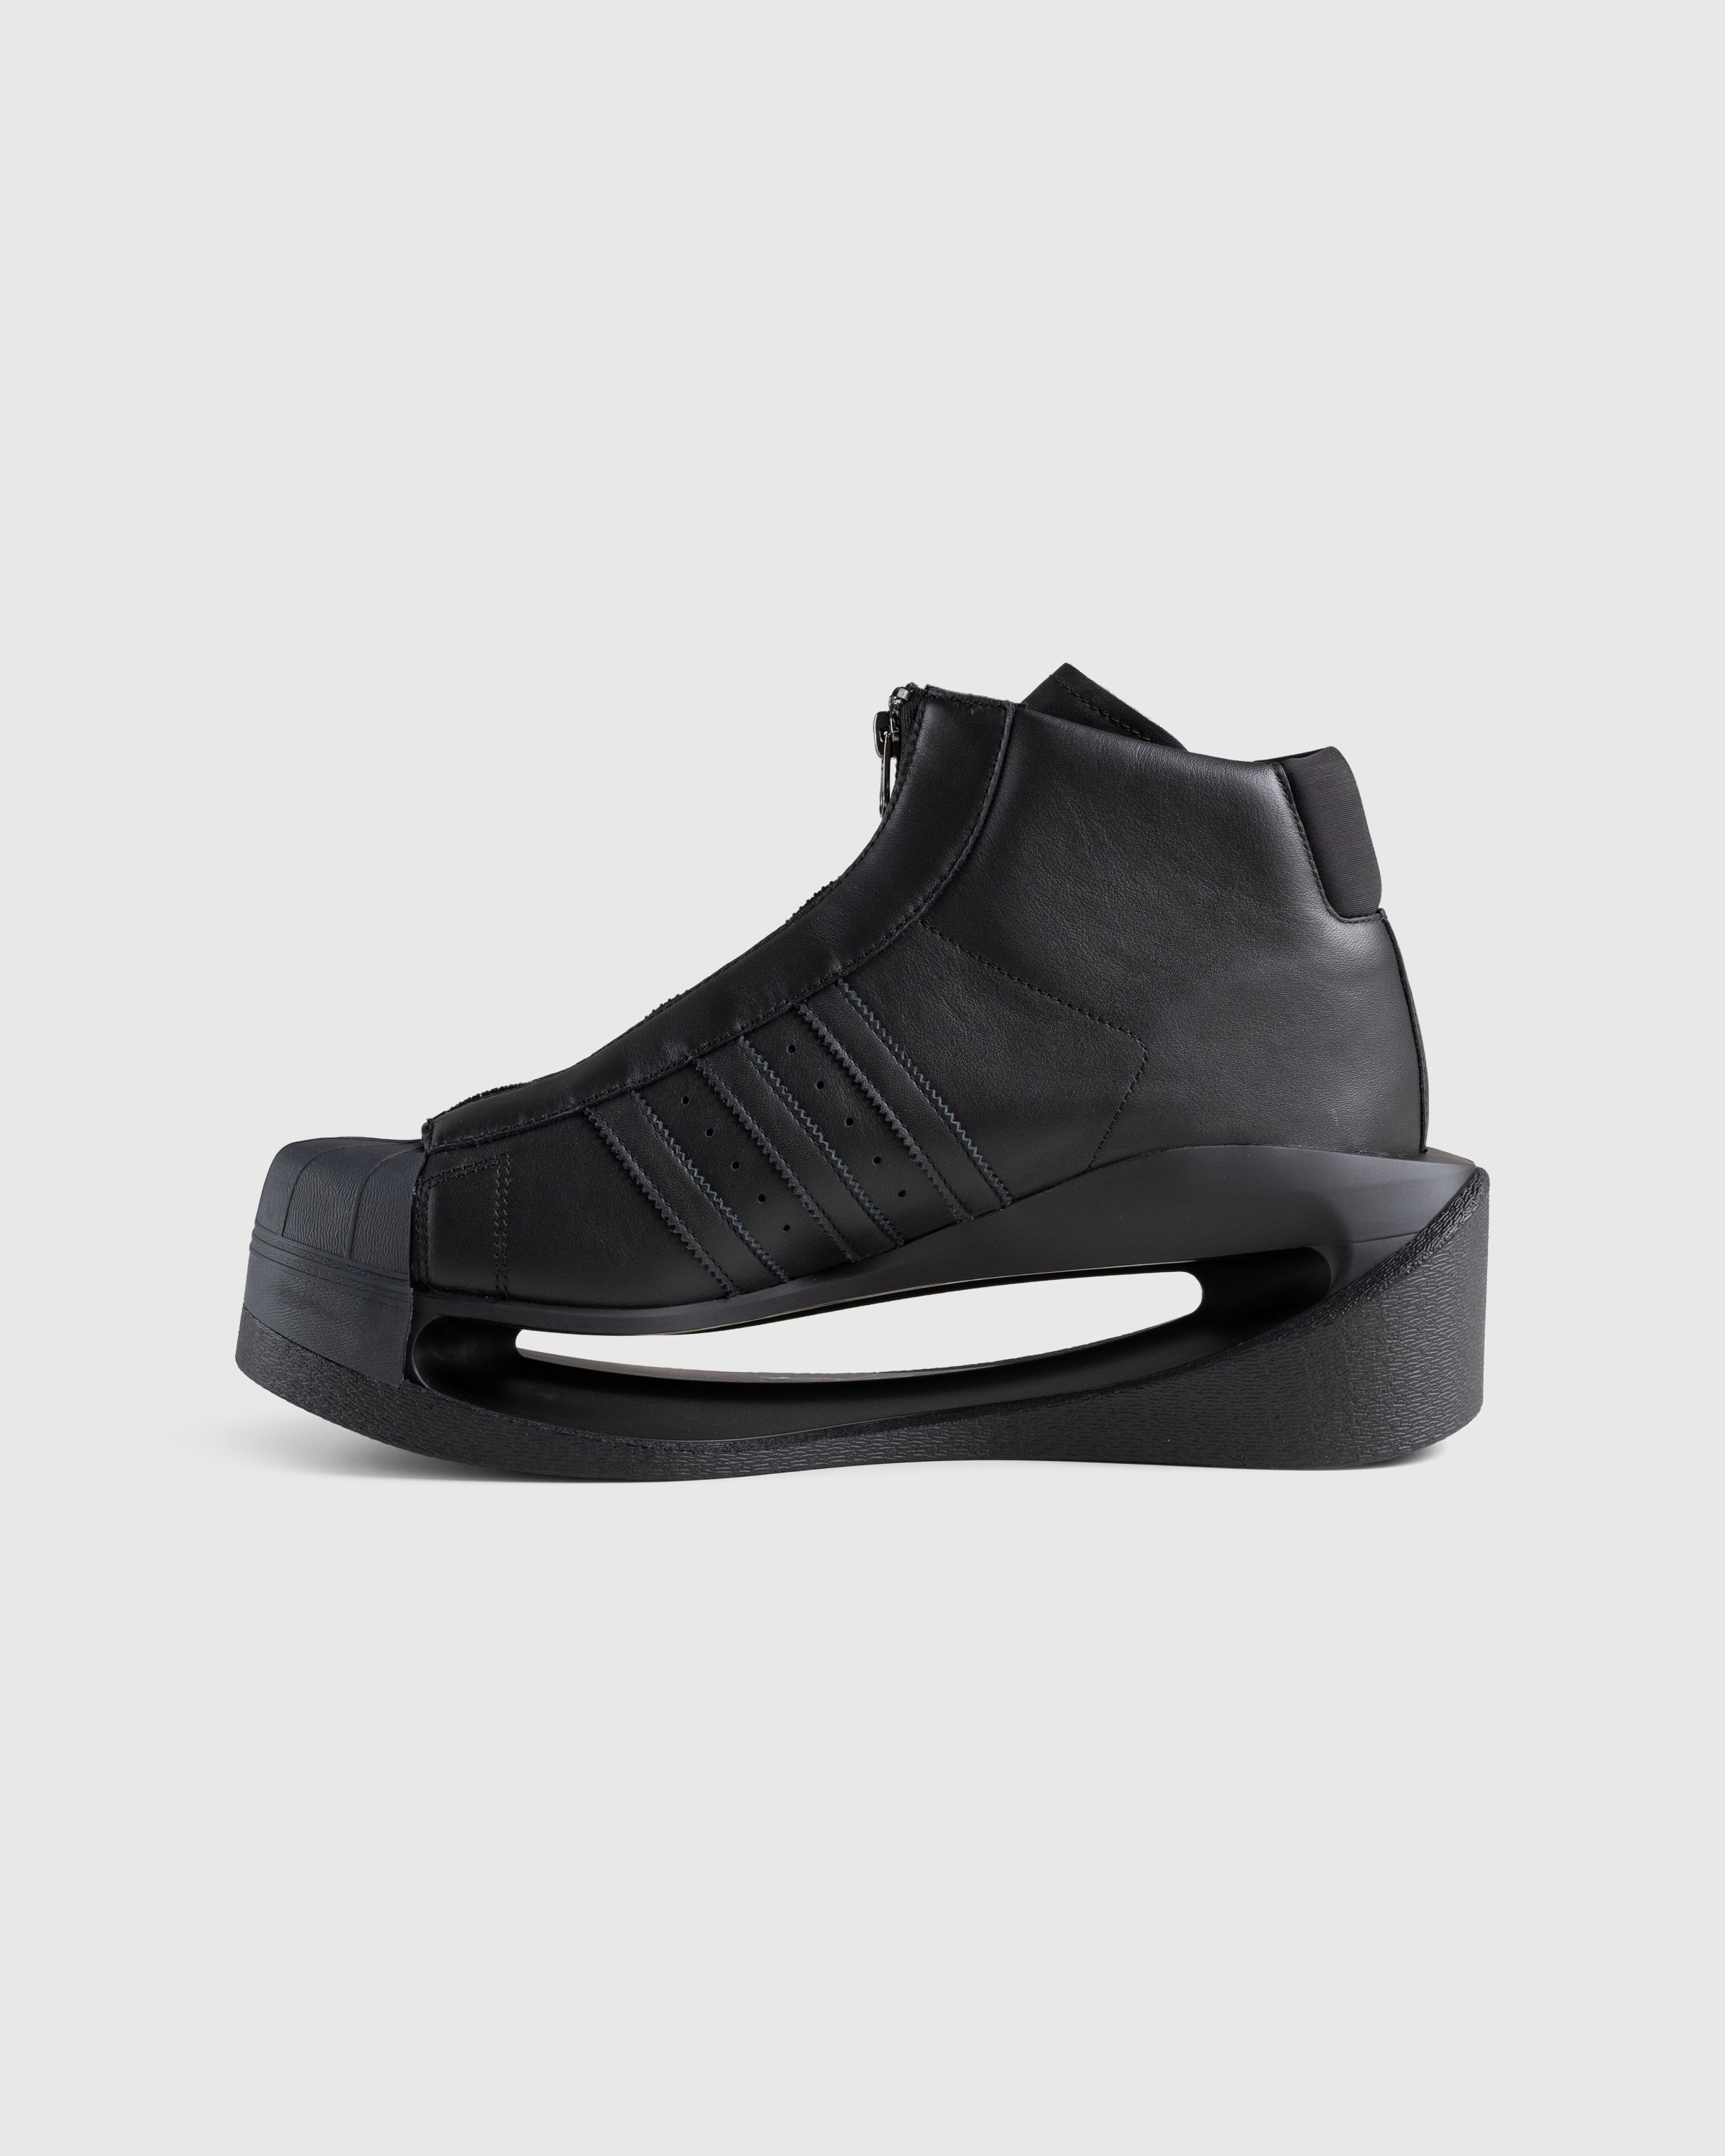 Y-3 - Gendo Pro Model Black - Footwear - Black - Image 2